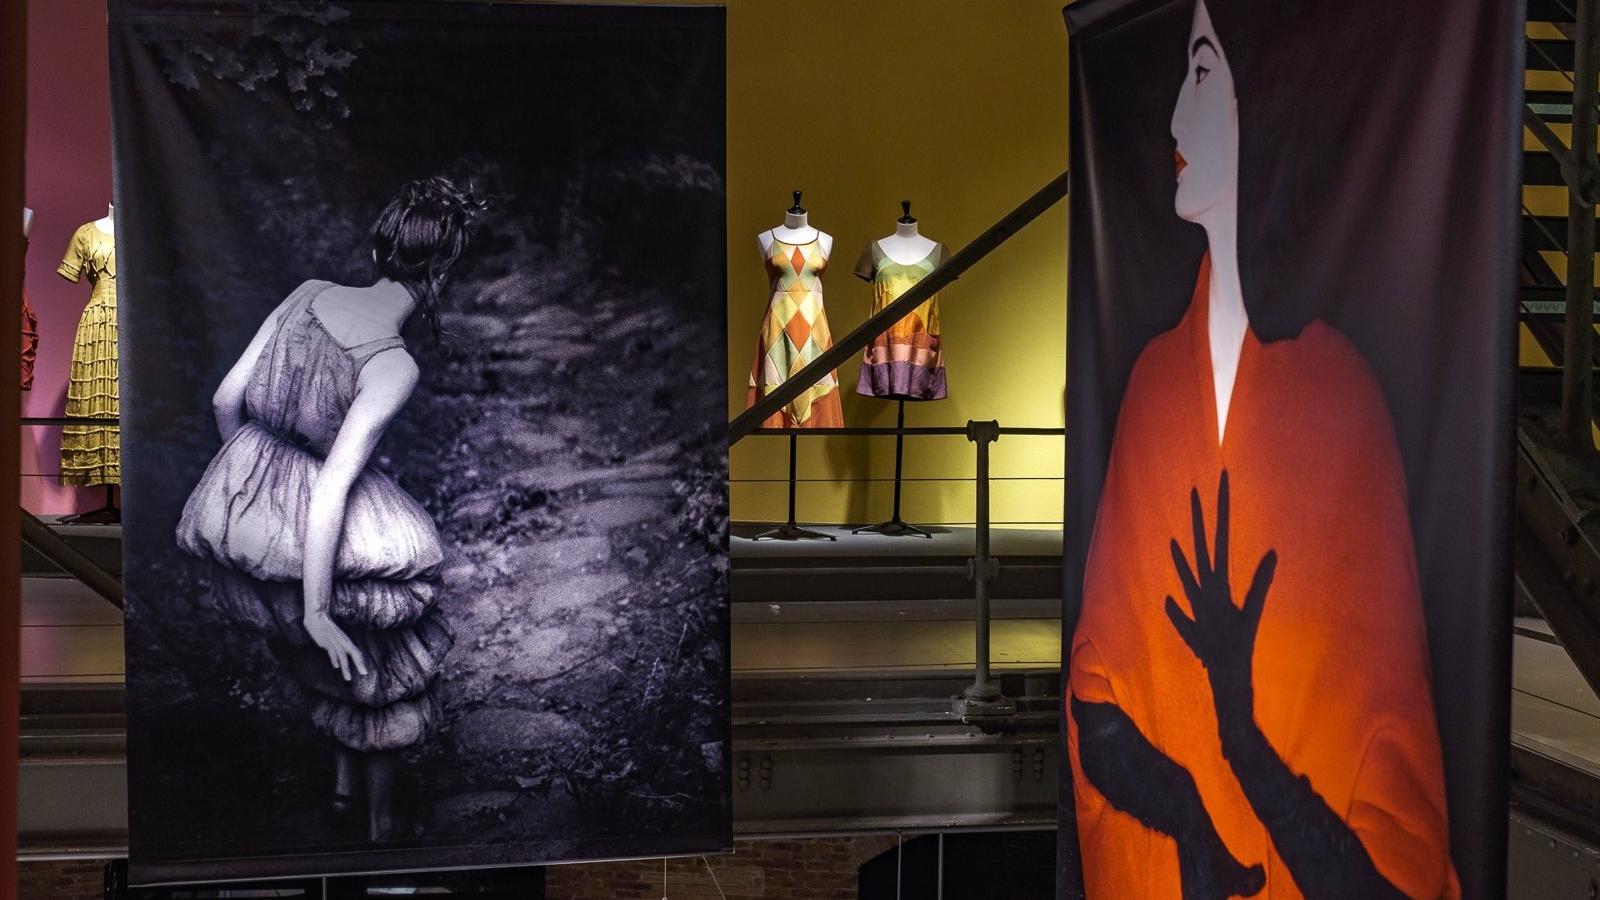 Prendas y fotografías recorren los 40 años de trayectoria de Sybilla en una exposición en la Sala Canal hasta el 15 de enero